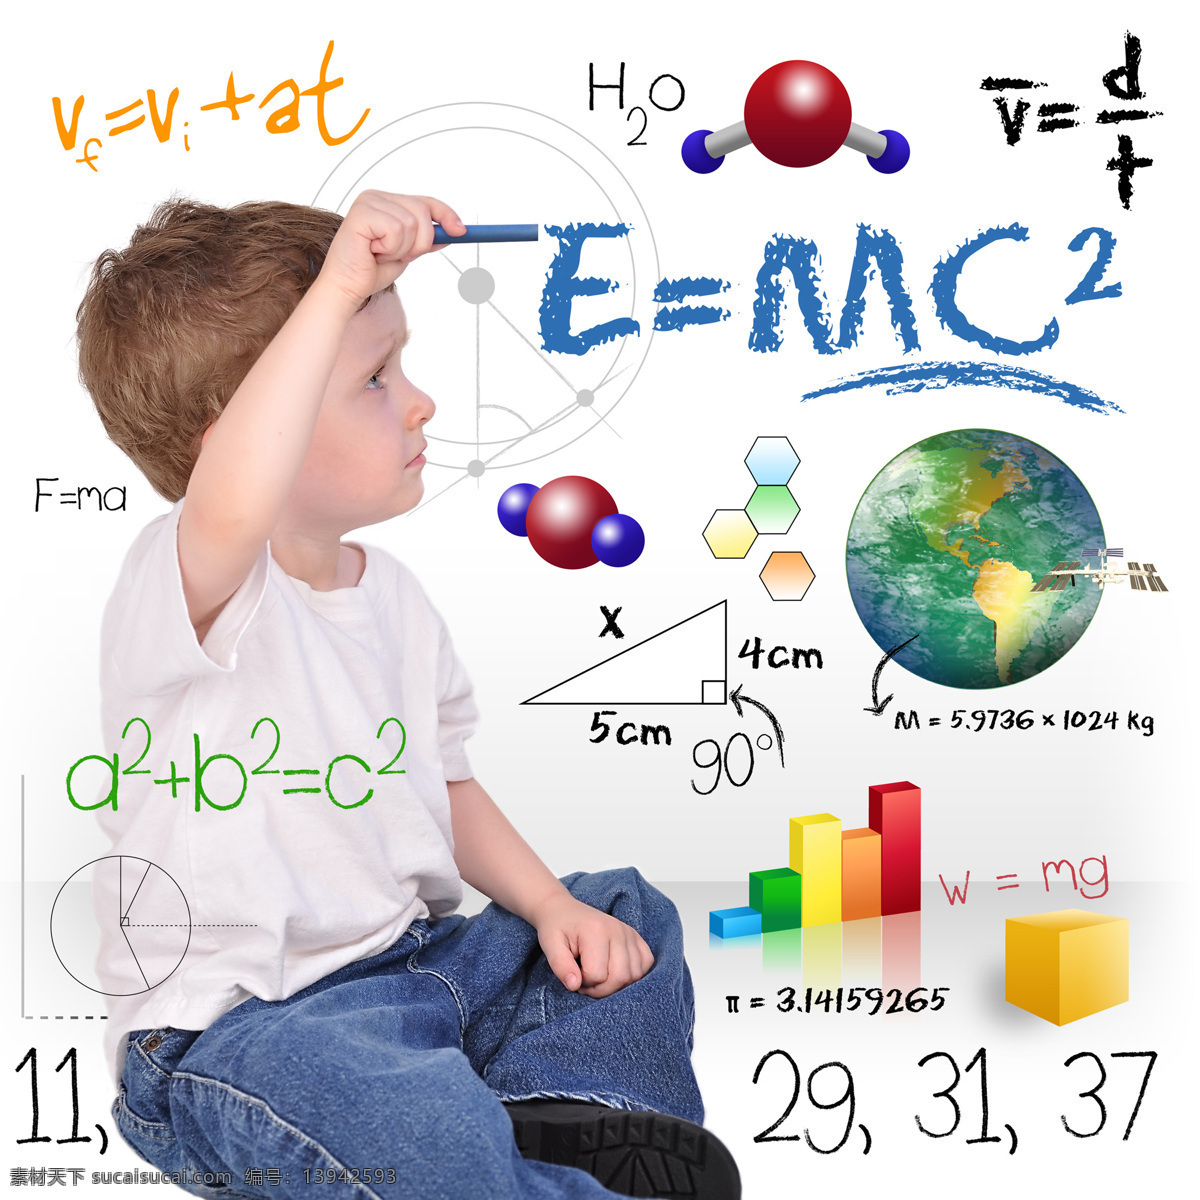 化学 教育 男孩 小男孩 男生 化学公式 化学教育 信息图表 小学生 儿童教育 儿童图片 人物图片